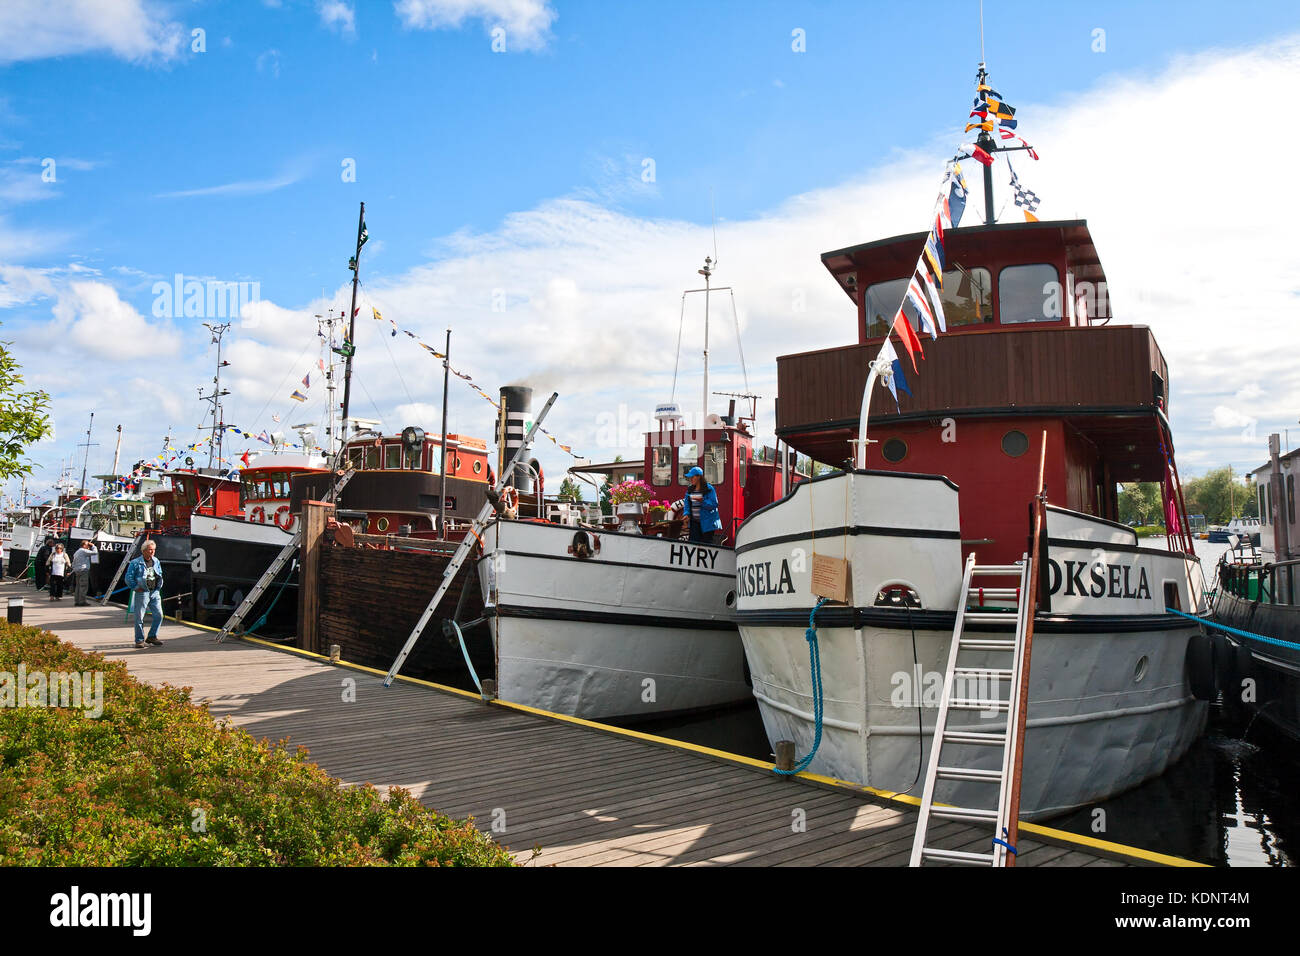 Lappeenranta, Finlande - le 21 juillet 2013 - régate vieux bateaux. bateaux construits au début du siècle dernier, amarré au quai de Lappeenranta. Banque D'Images